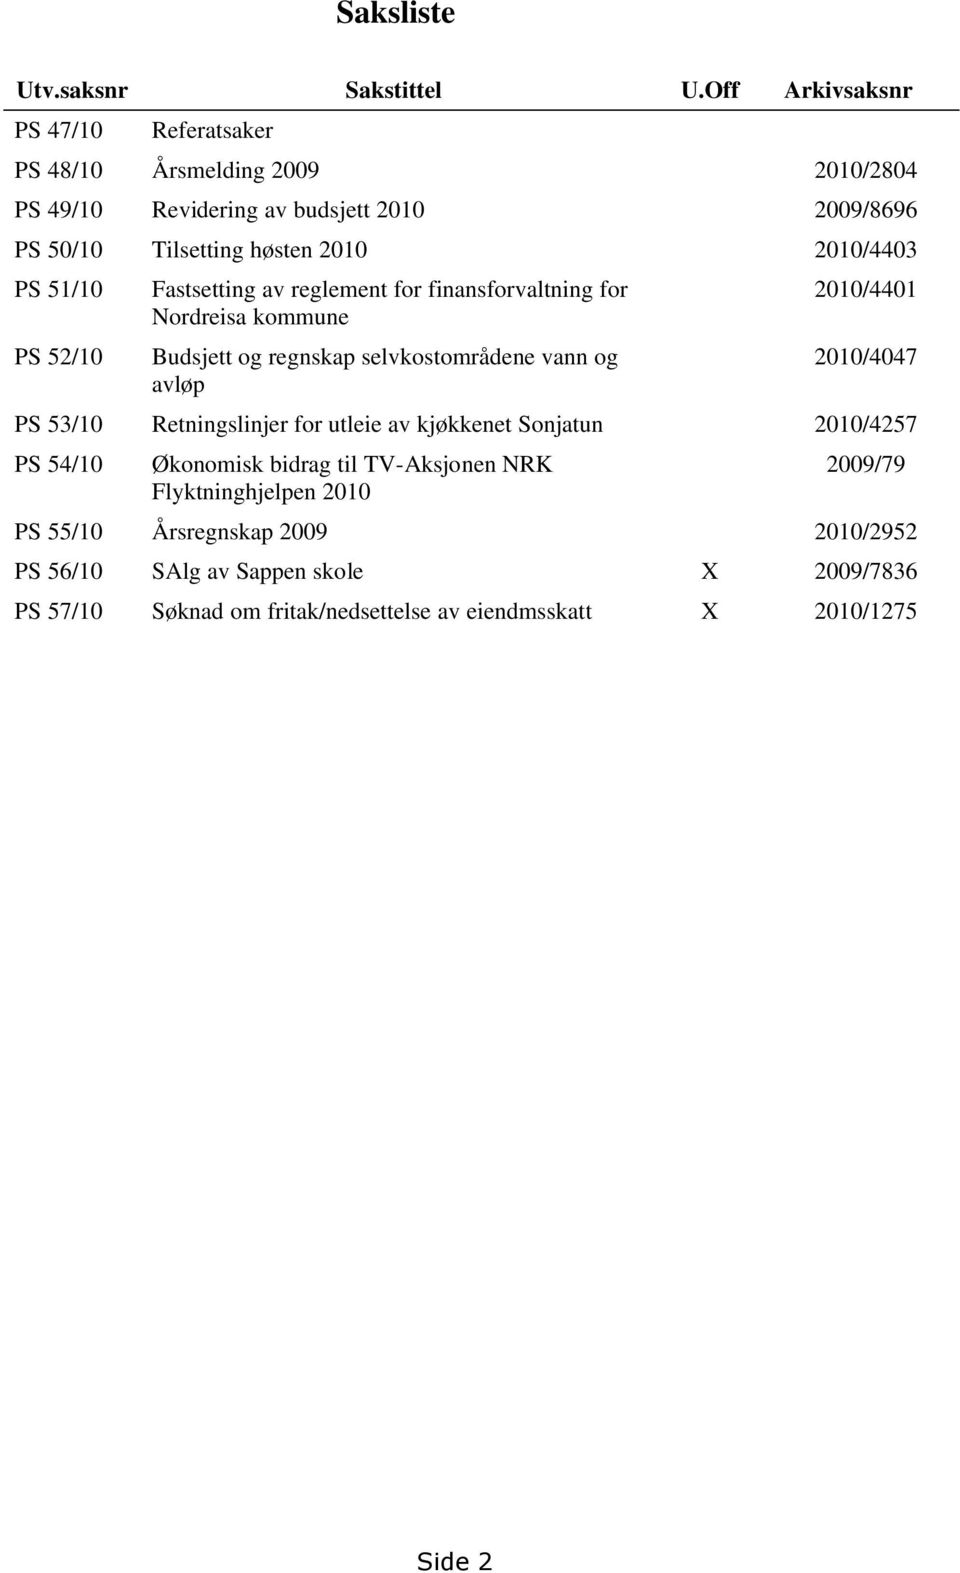 PS 51/10 PS 52/10 Fastsetting av reglement for finansforvaltning for Nordreisa kommune Budsjett og regnskap selvkostområdene vann og avløp 2010/4401 2010/4047 PS